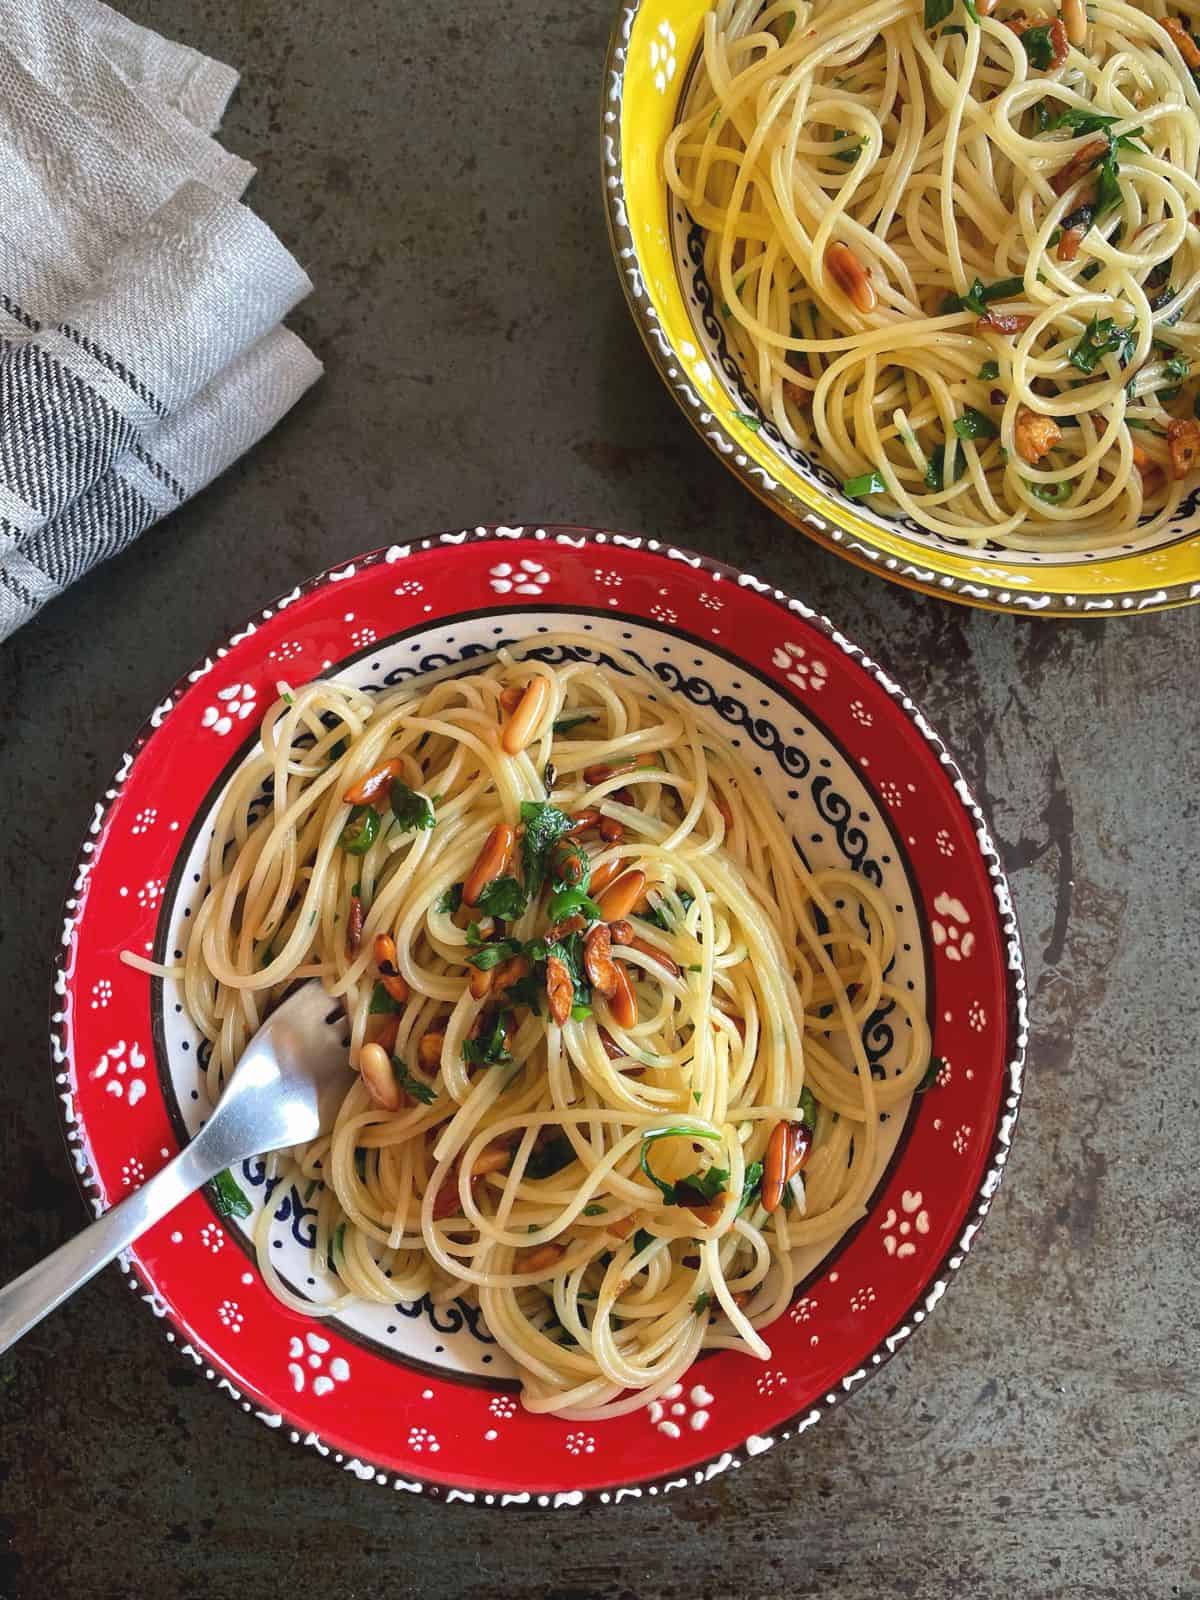 Two bowls of spaghetti aglio e olio. 